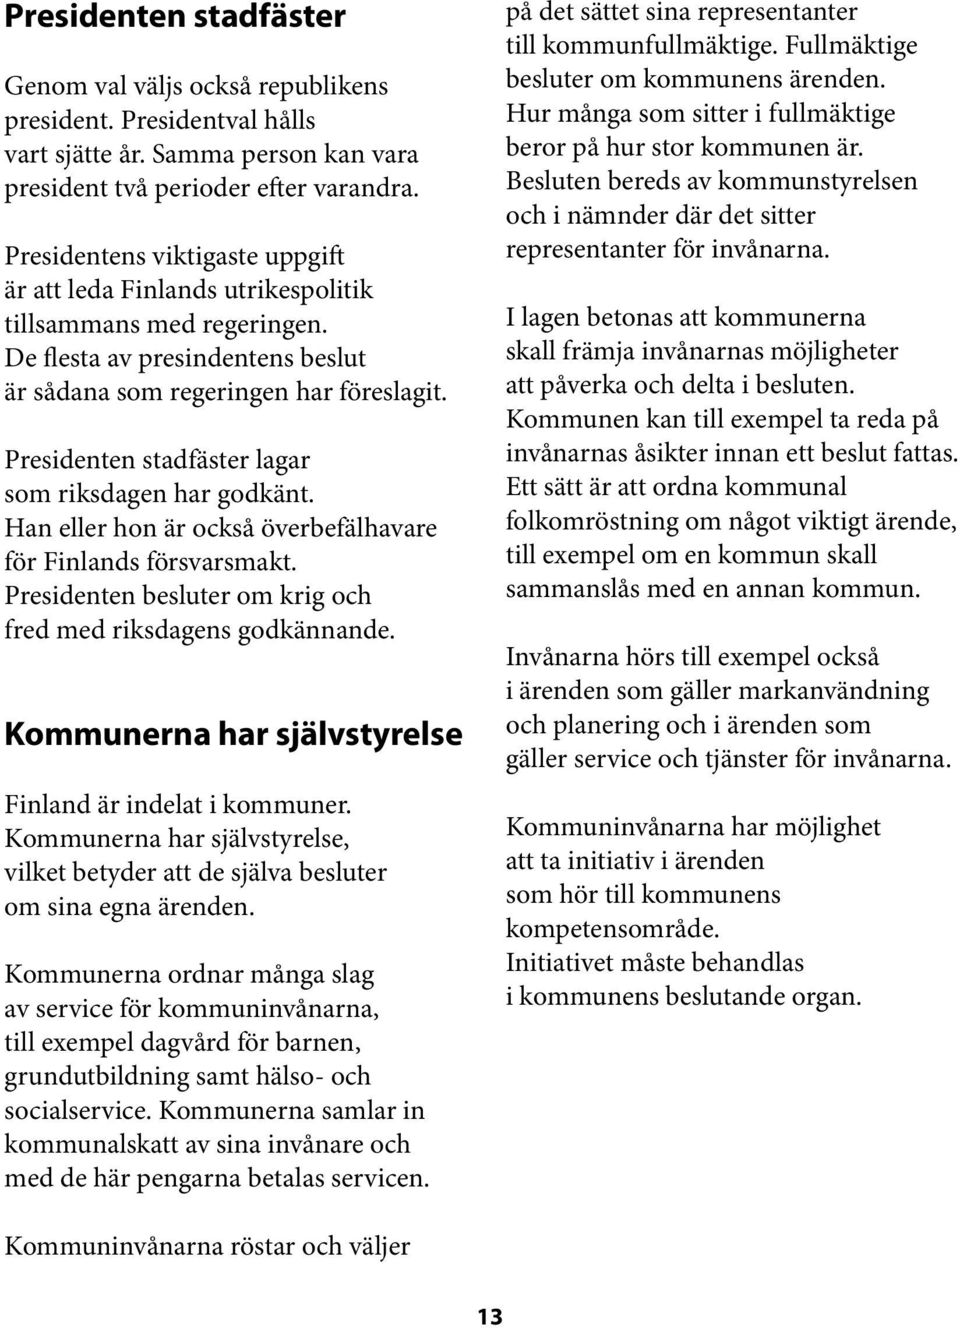 Presidenten stadfäster lagar som riksdagen har godkänt. Han eller hon är också överbefälhavare för Finlands försvarsmakt. Presidenten besluter om krig och fred med riksdagens godkännande.